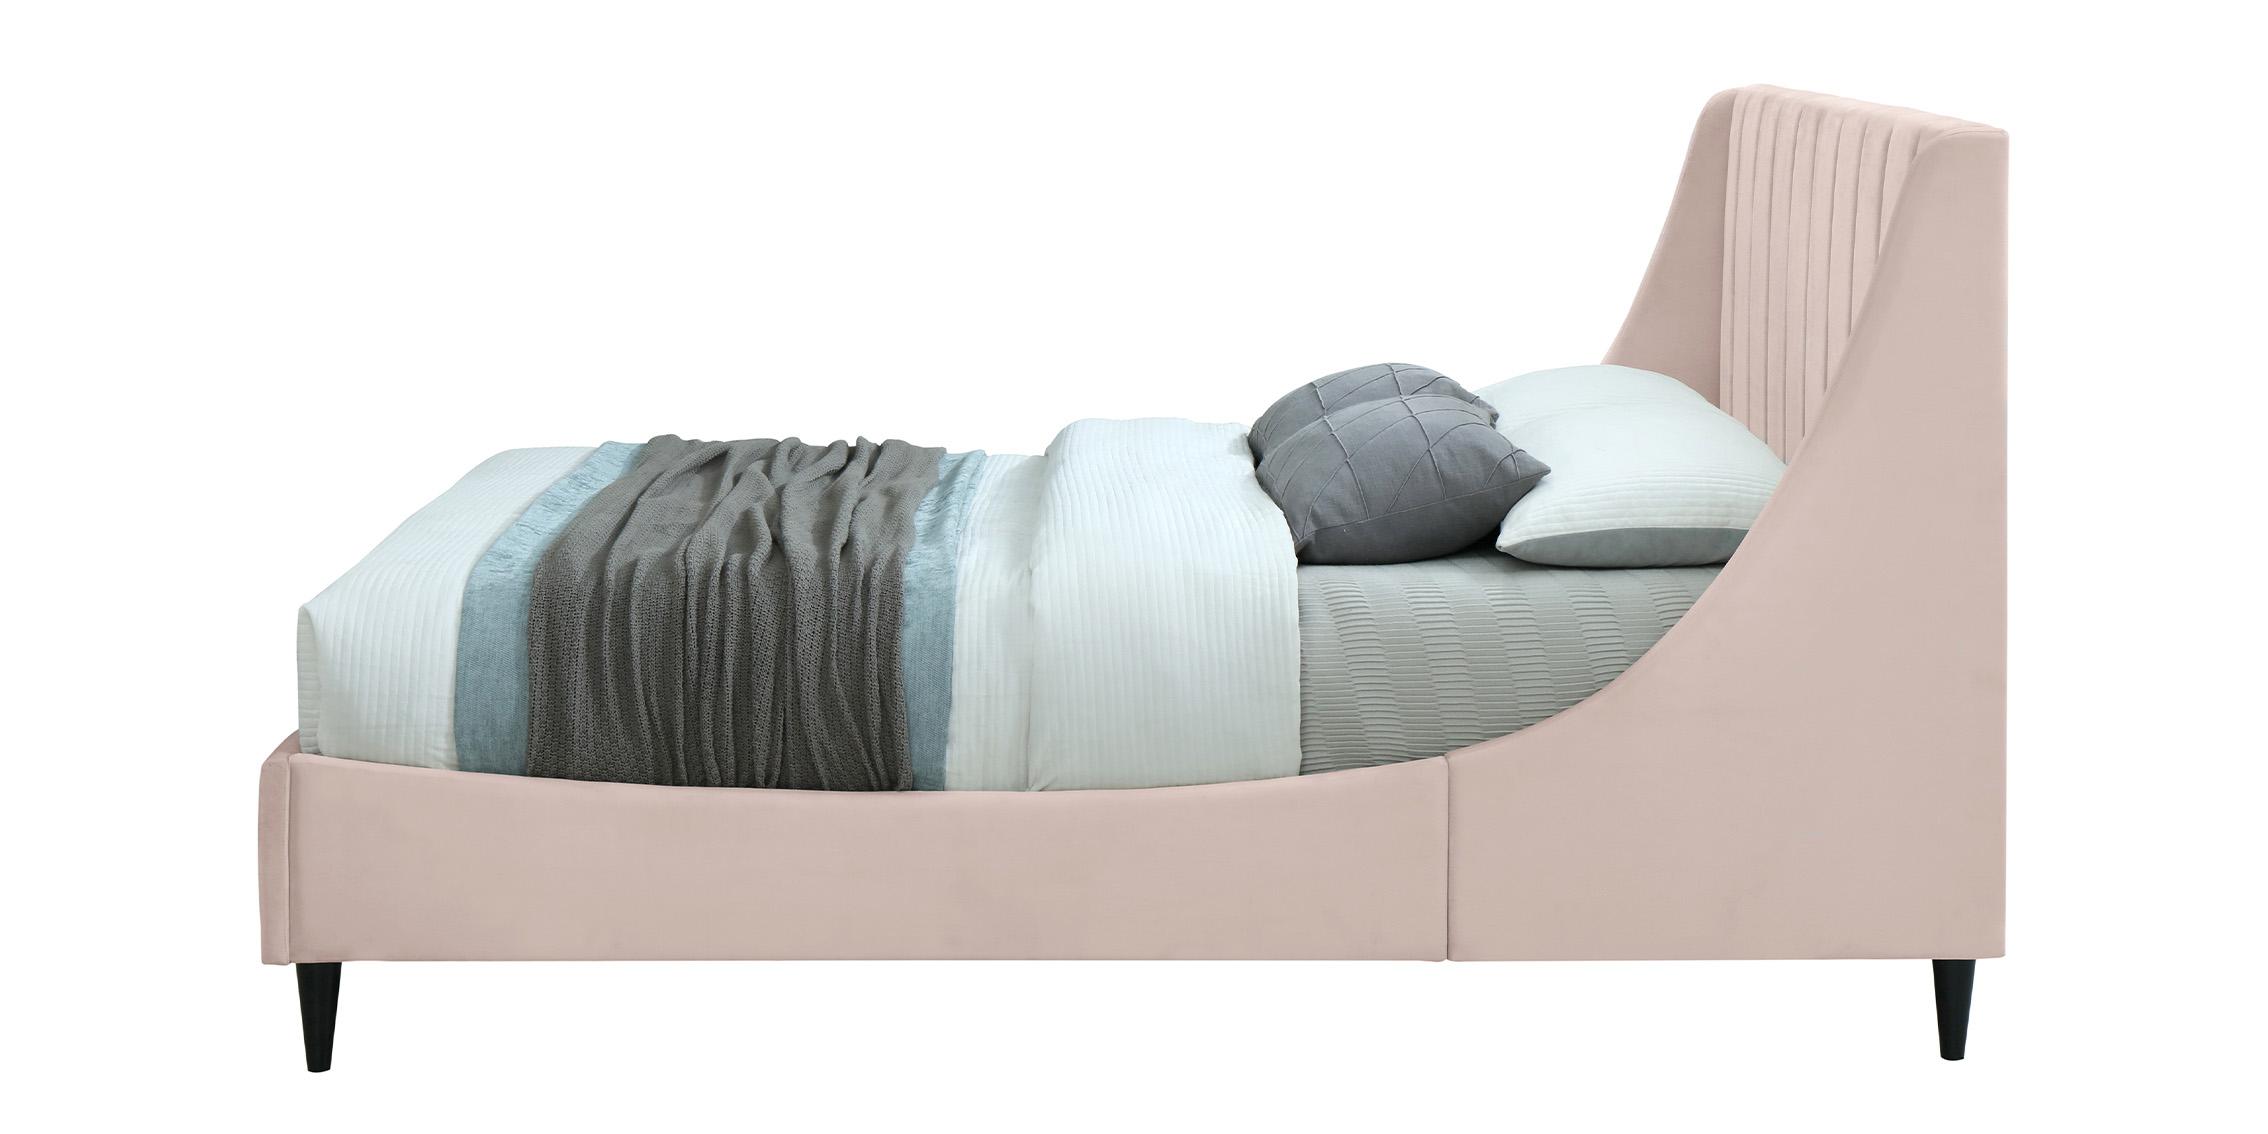 

    
EvaPink-Q Meridian Furniture Platform Bed
